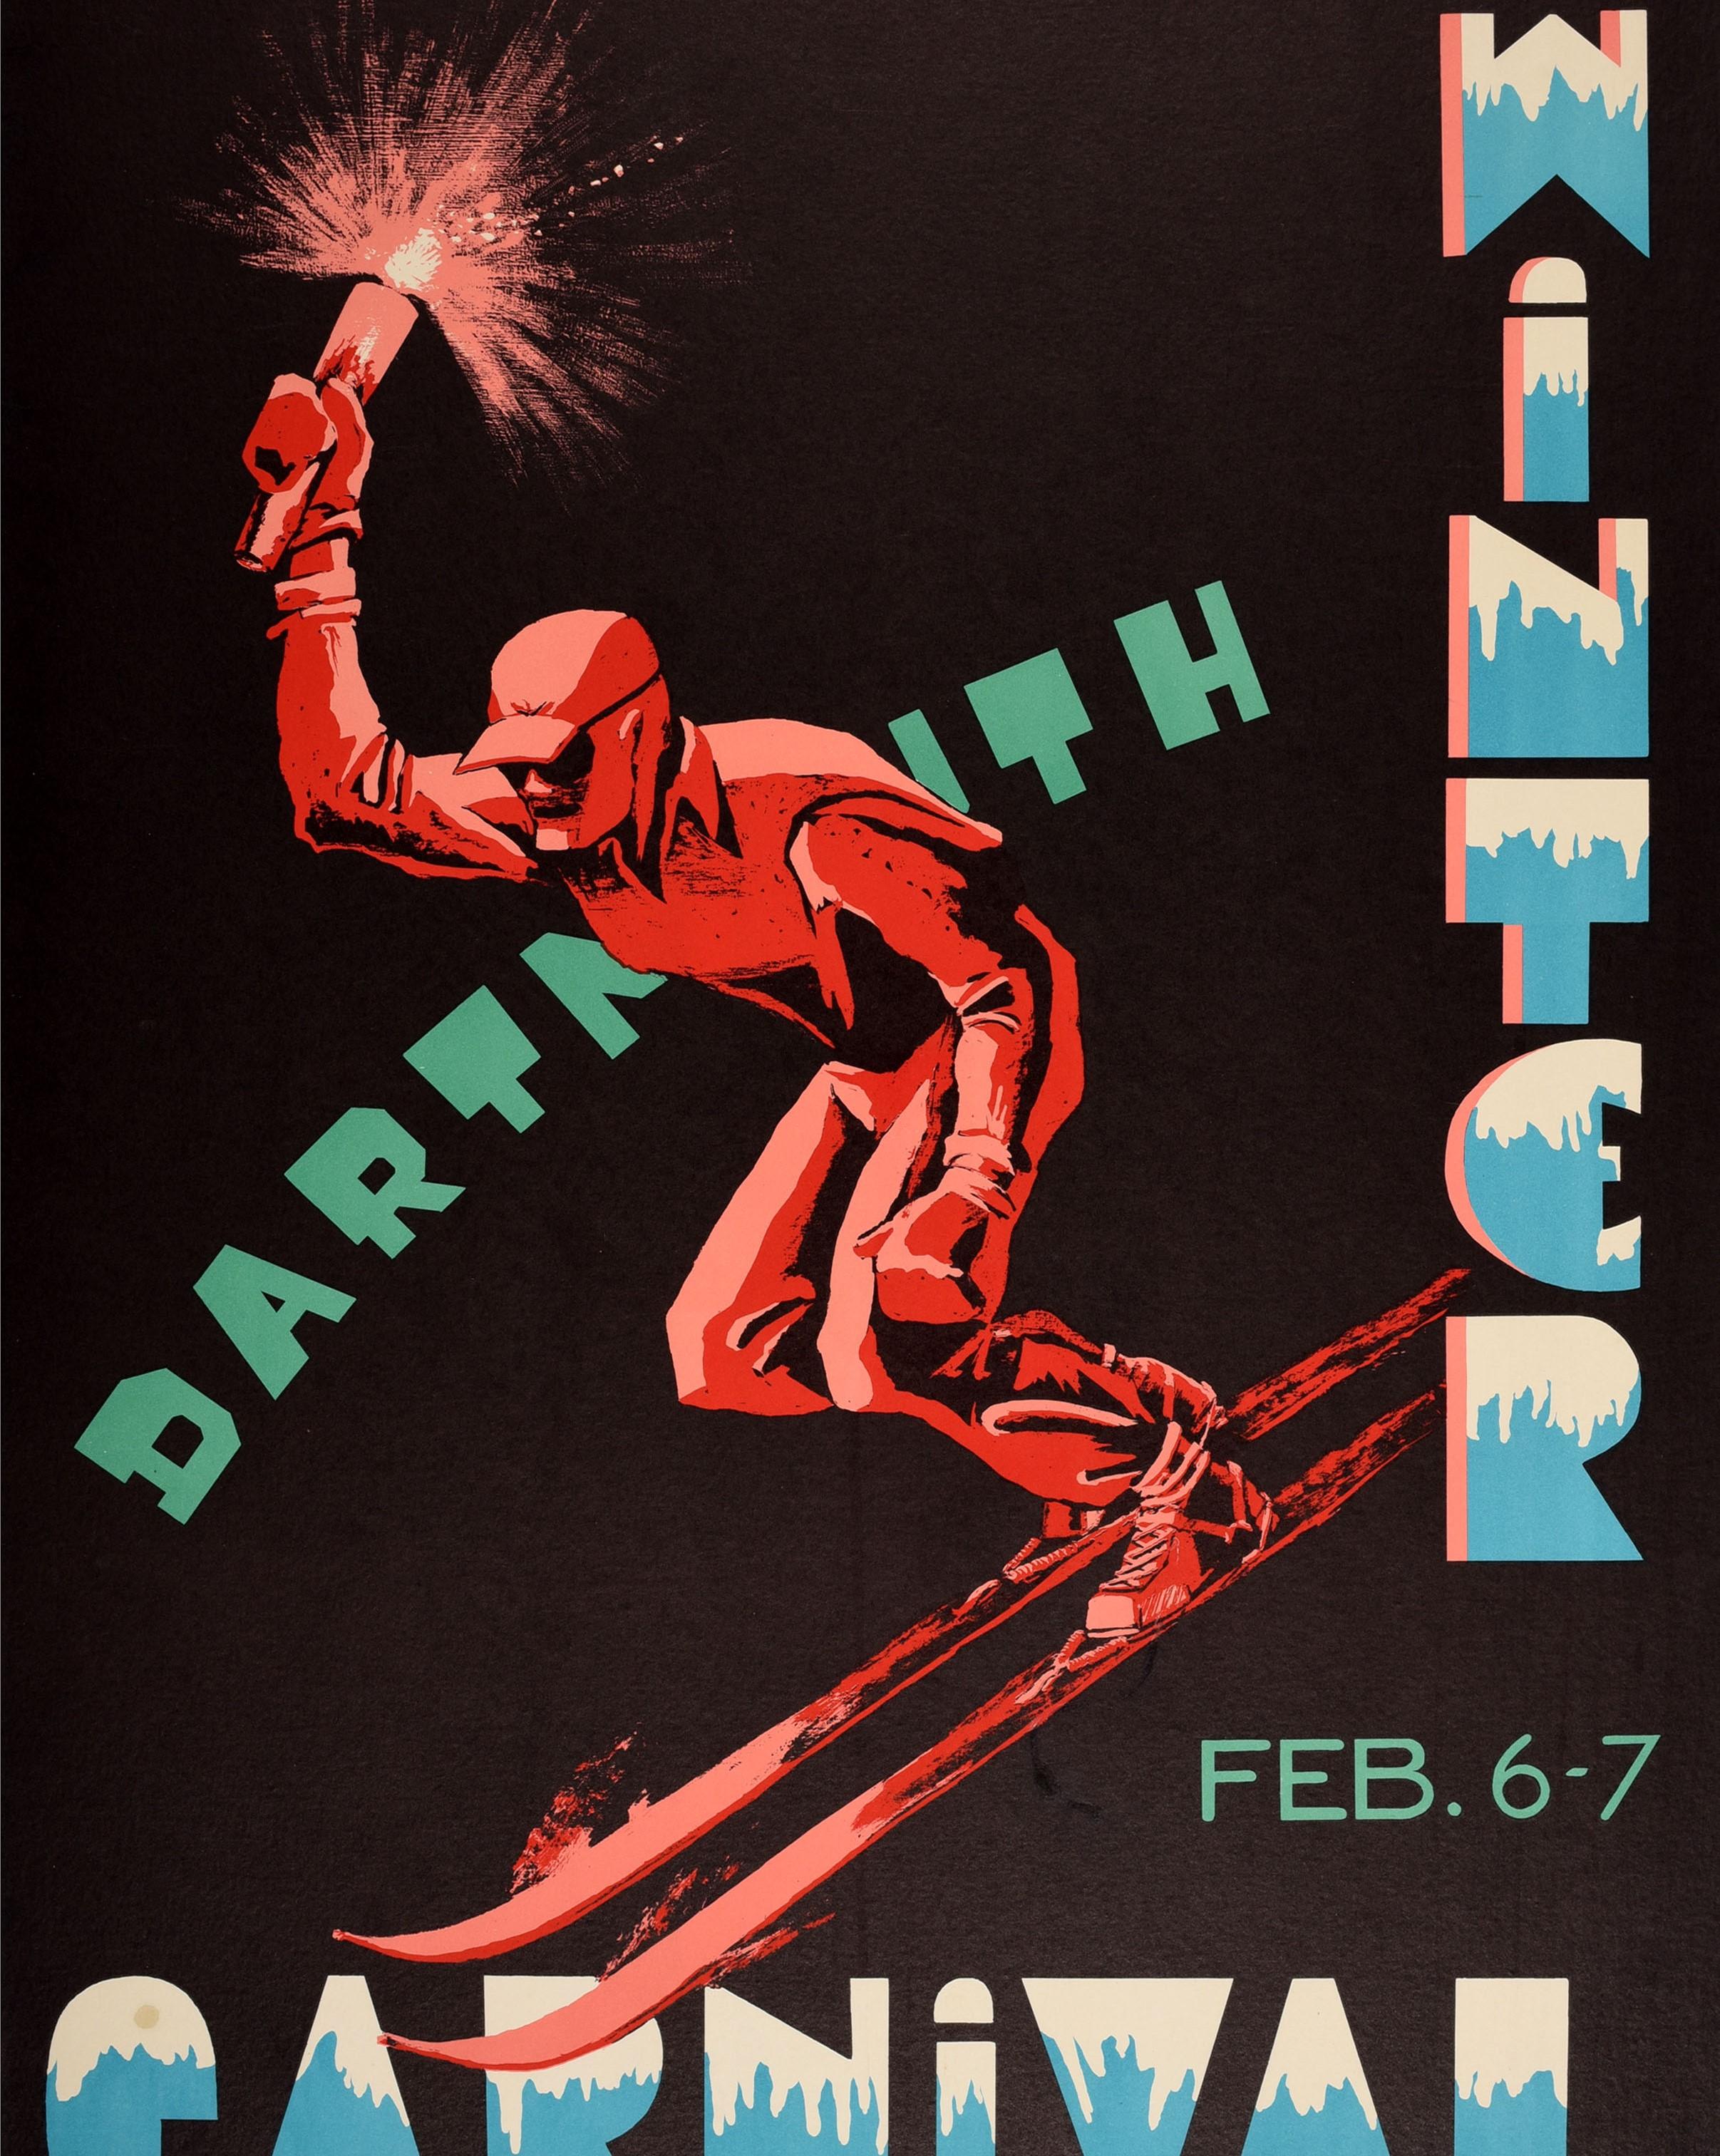 Originales Original-Skiplakat aus dem Dartmouth Winterschliff, der am 6-7. Februar 1953 stattfand, mit einem großartigen grafischen Entwurf des Dartmouth College-Schülers Leonard J. Clark (Schuleklasse '56), der einen Skier zeigt, der eine